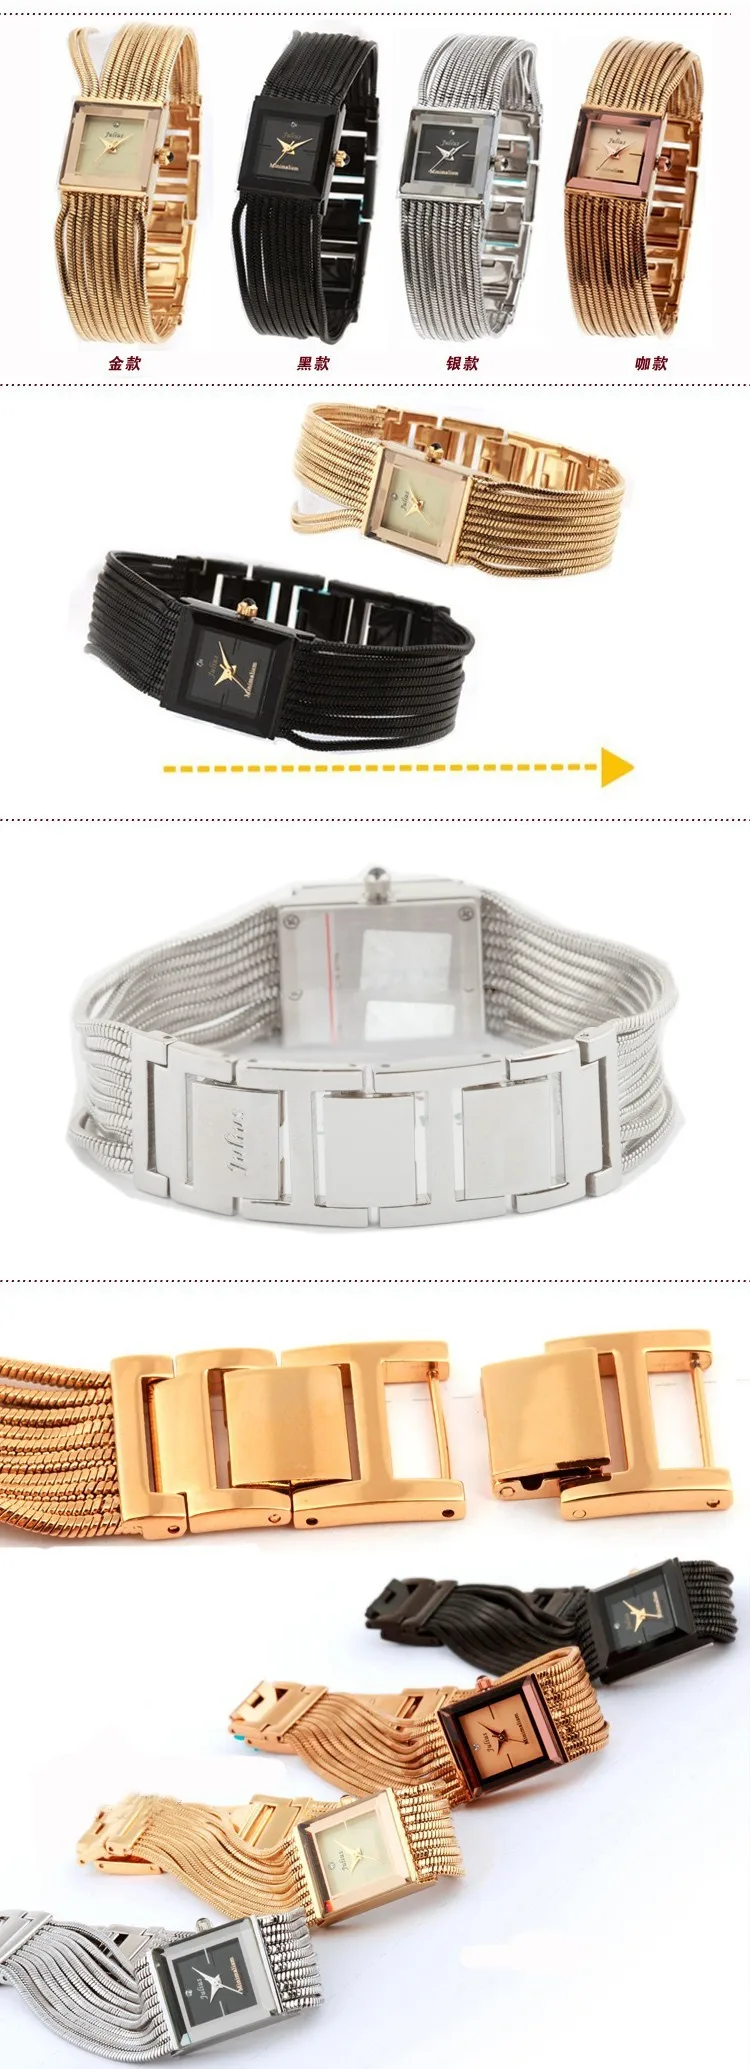 Julius Леди женские часы Япония кварцевые часы тонкой моды браслет люксовый бренд змея кисточки девушки подарок на день рождения коробка